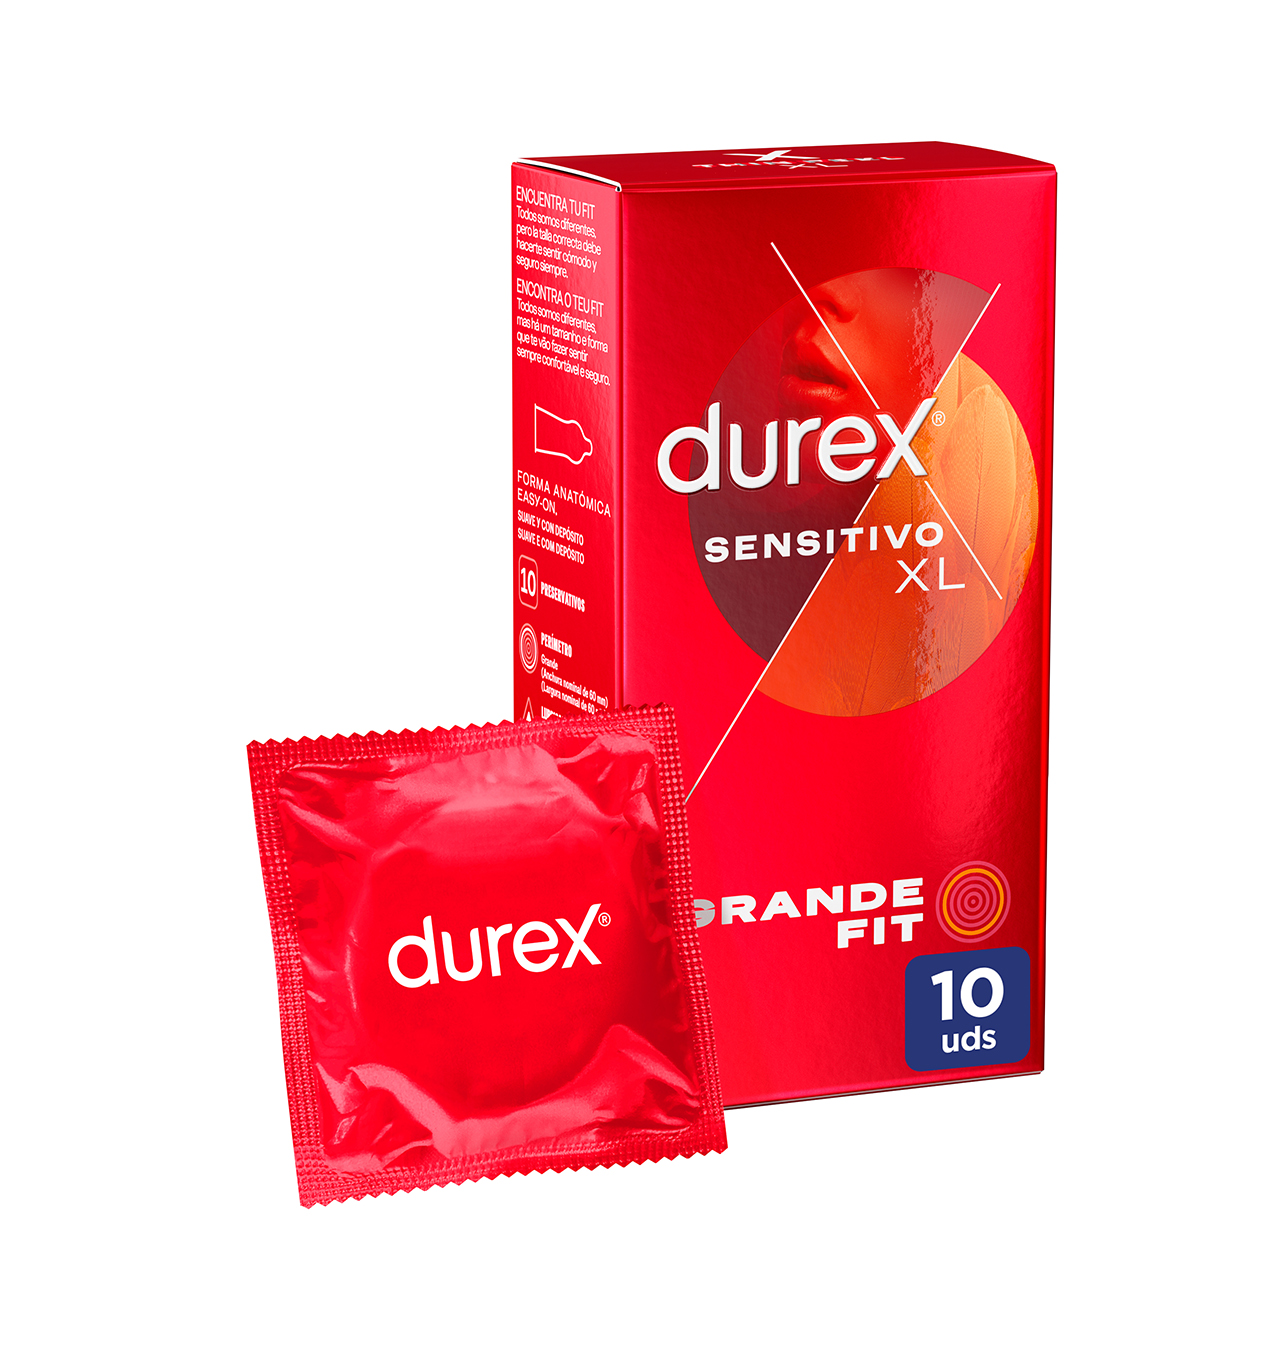 Comprar Preservativo Durex Sensitivo Xl 10 Unidades Parafarmacia En Condisline